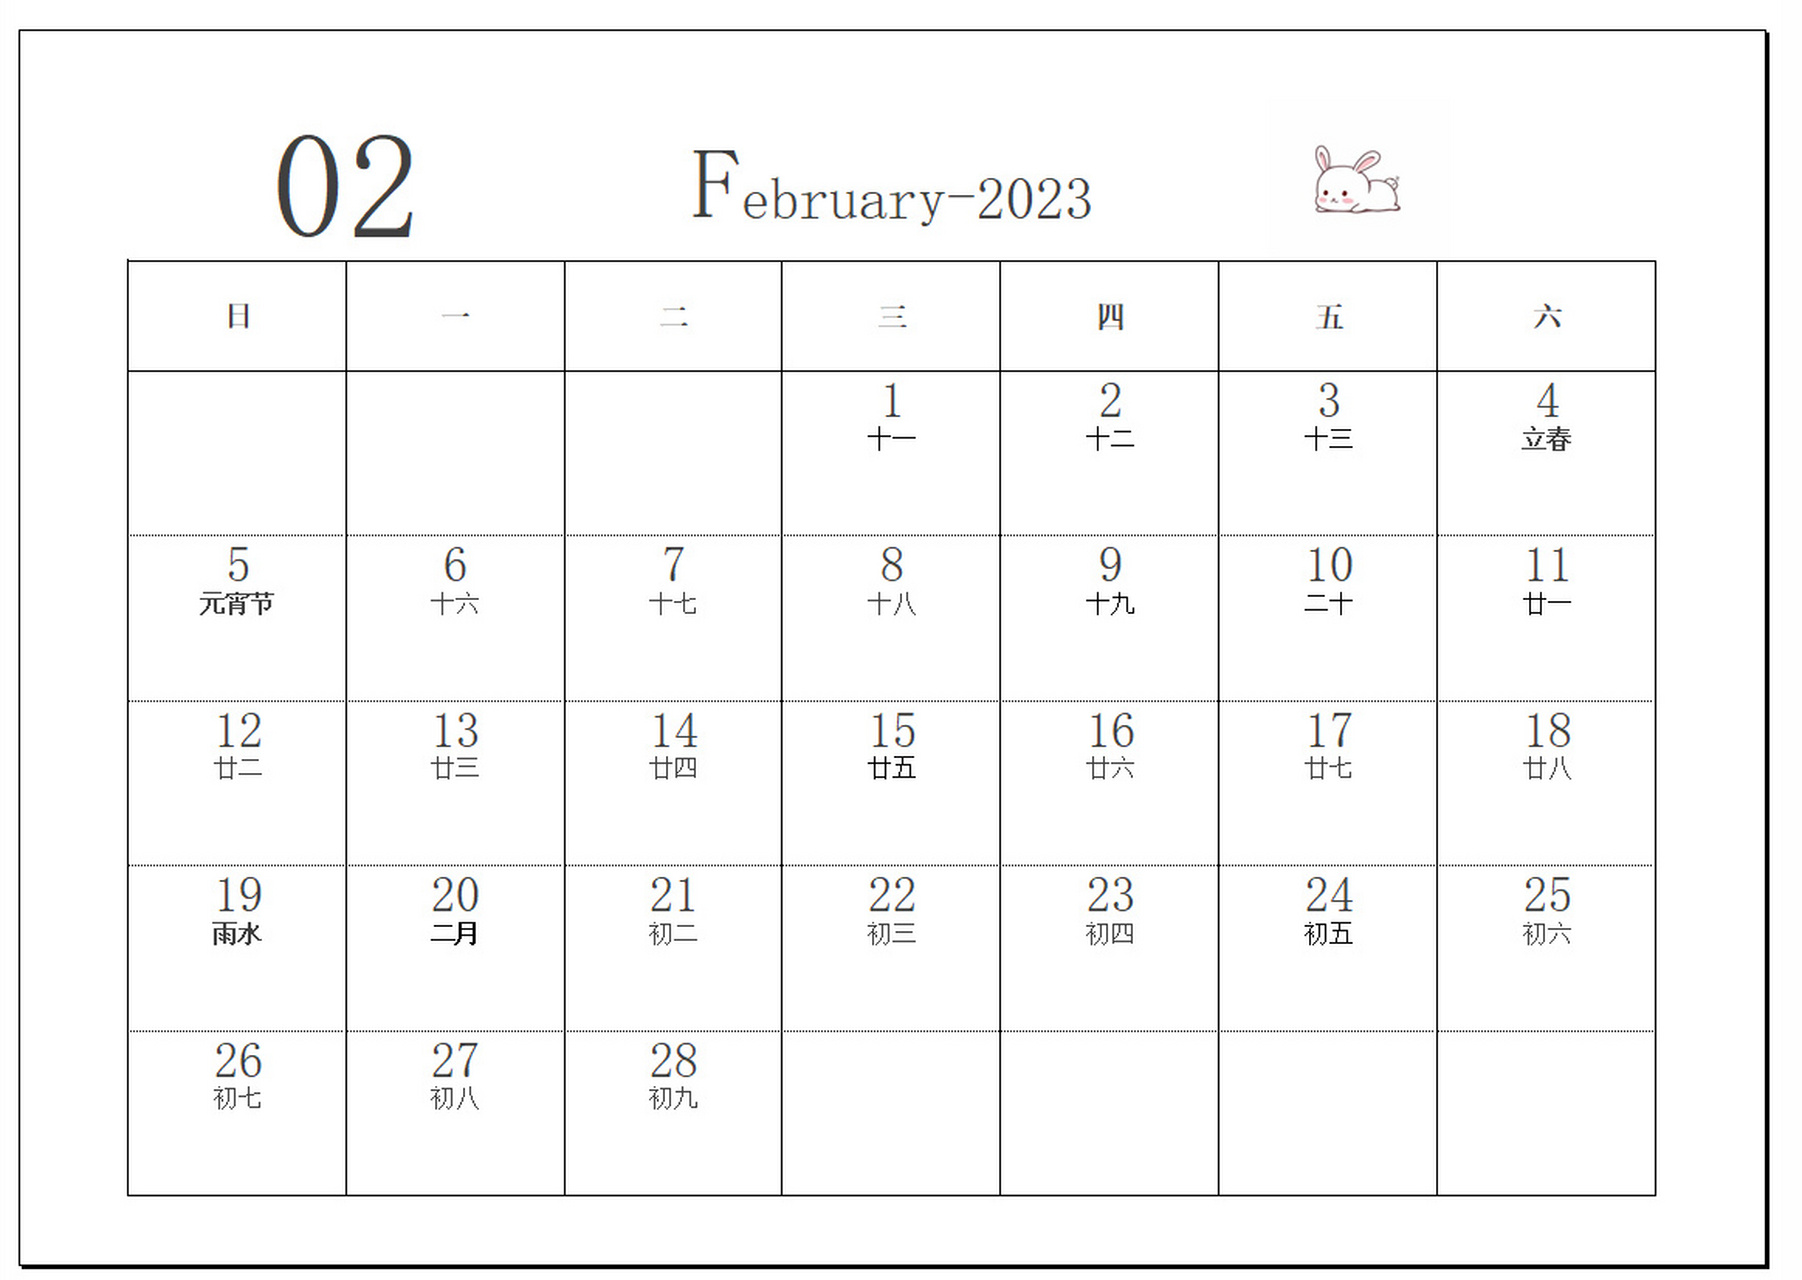 2023年日历a4版 每年都要做个日历,以前自己手画,现在省事打印出来